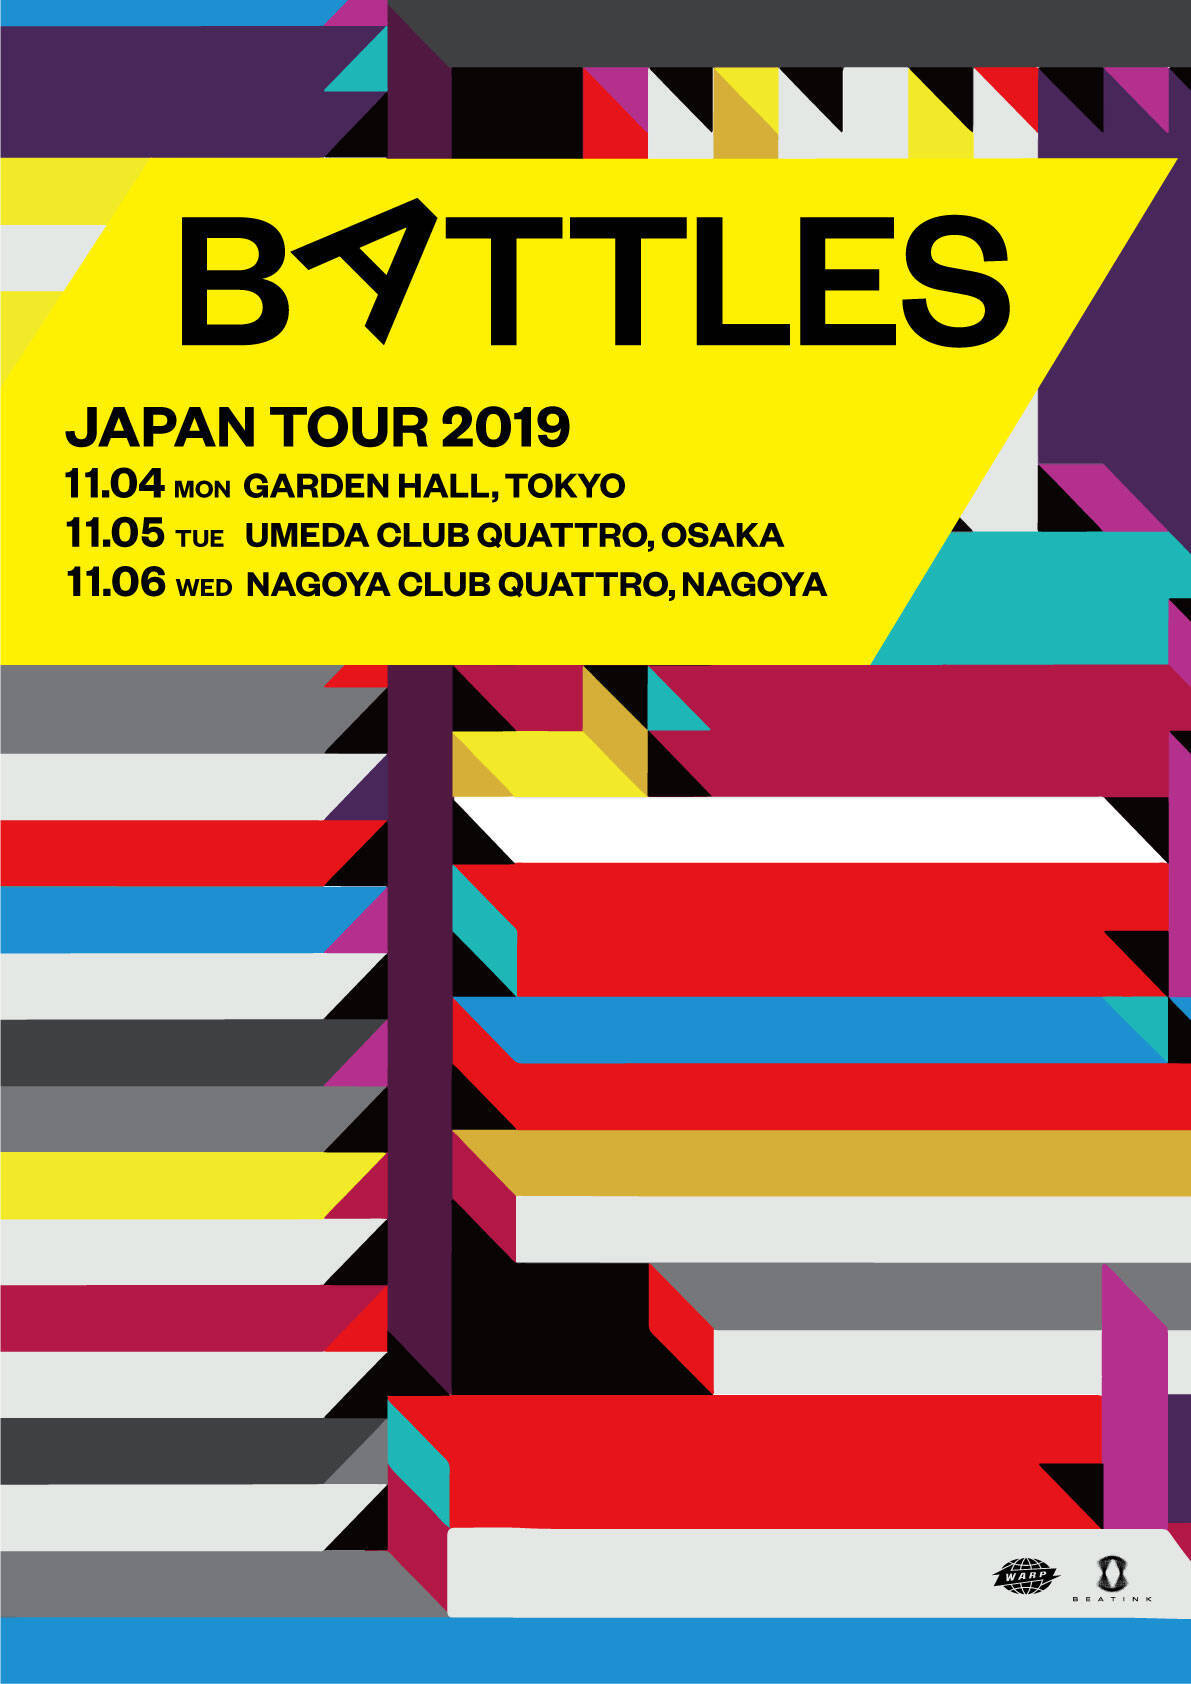 バトルス、新作『ジュース・B・クリプツ』を引っさげジャパンツアー開催